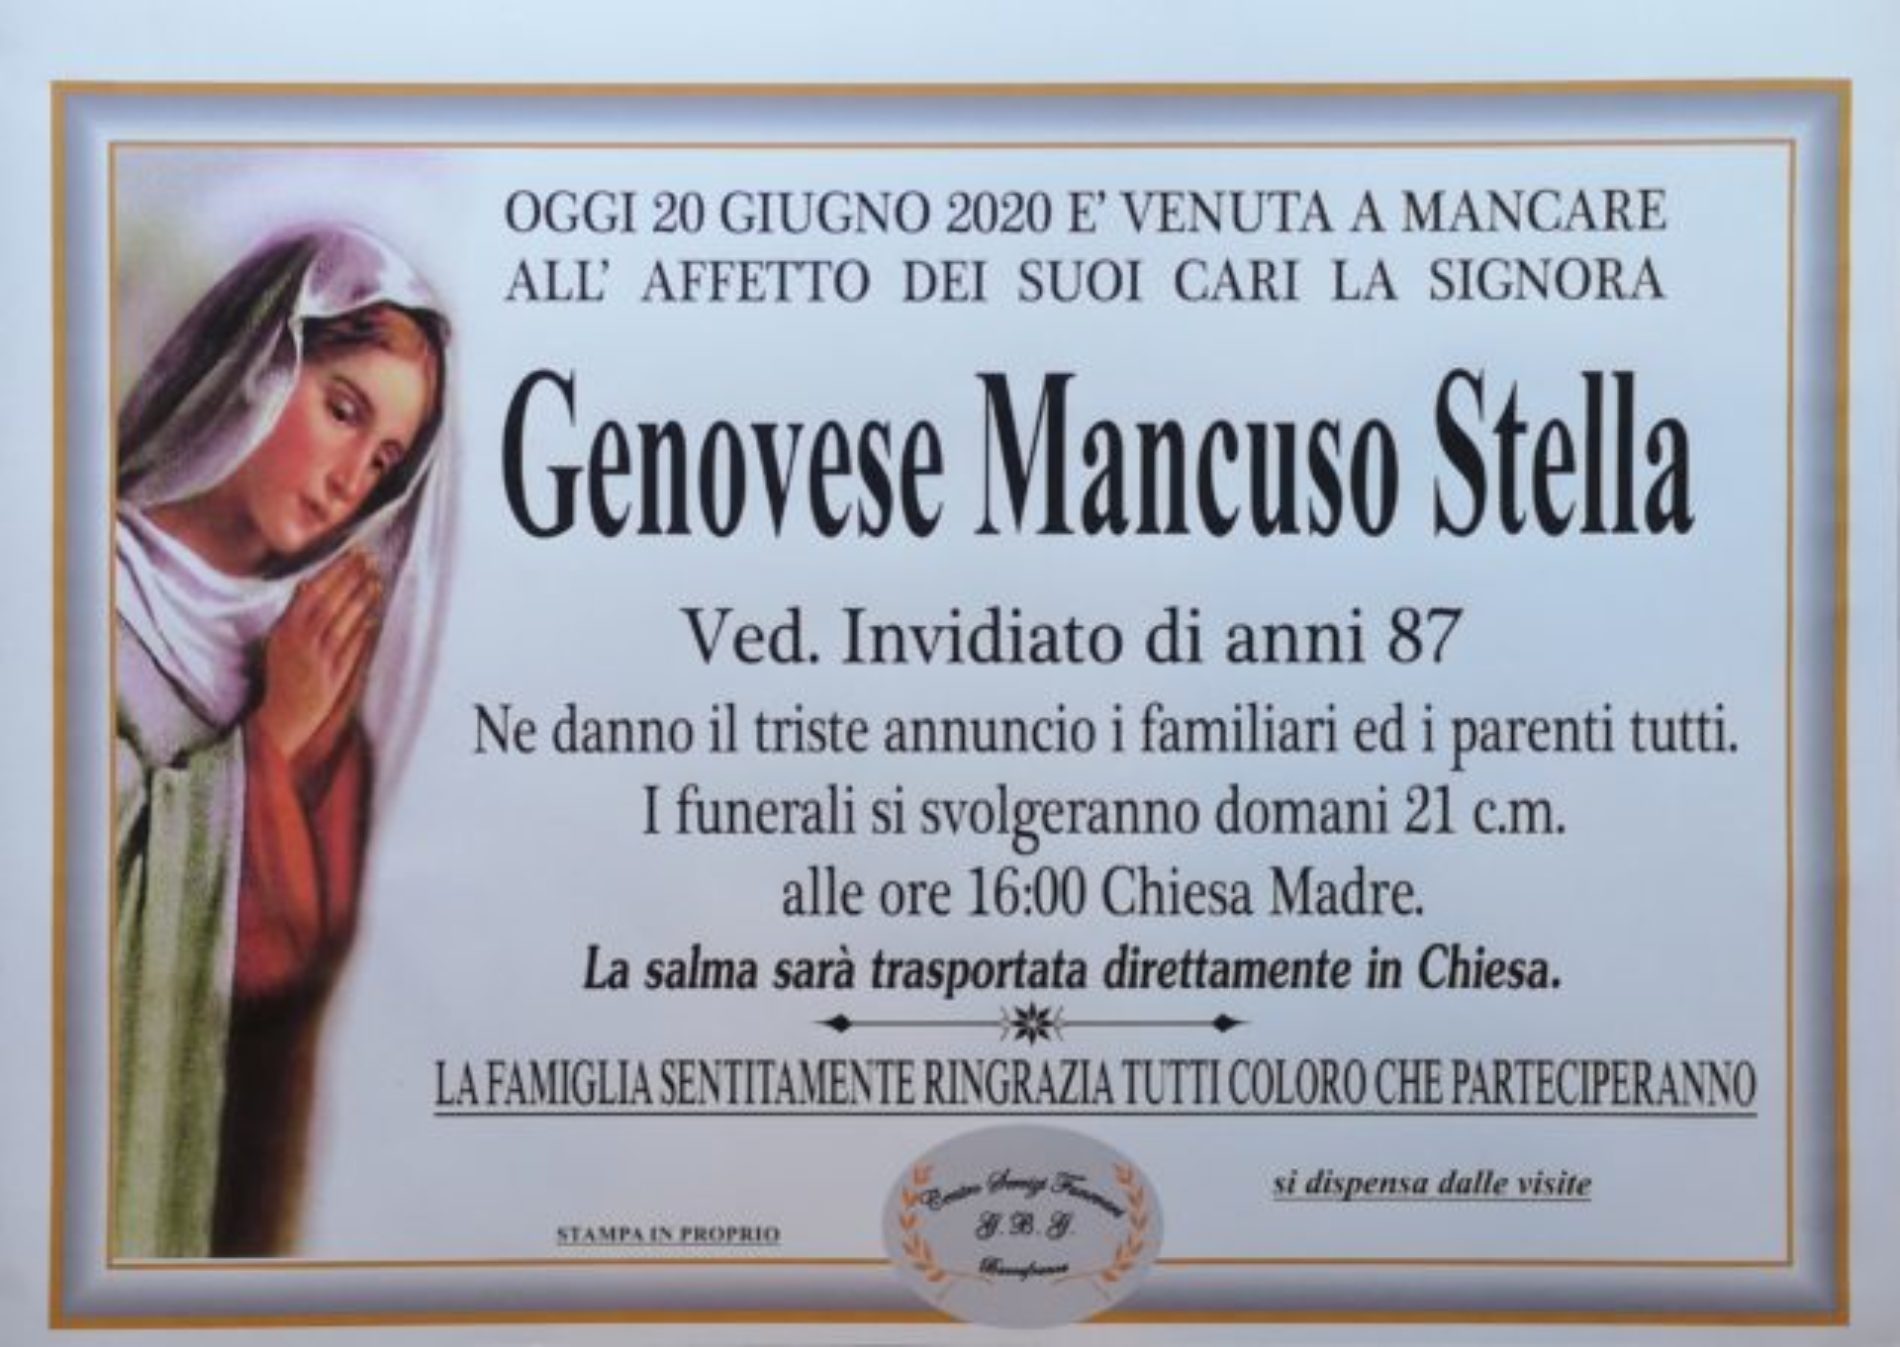 Annuncio Centro servizi funerari G.B.G.  Genovese Mancuso Stella 87